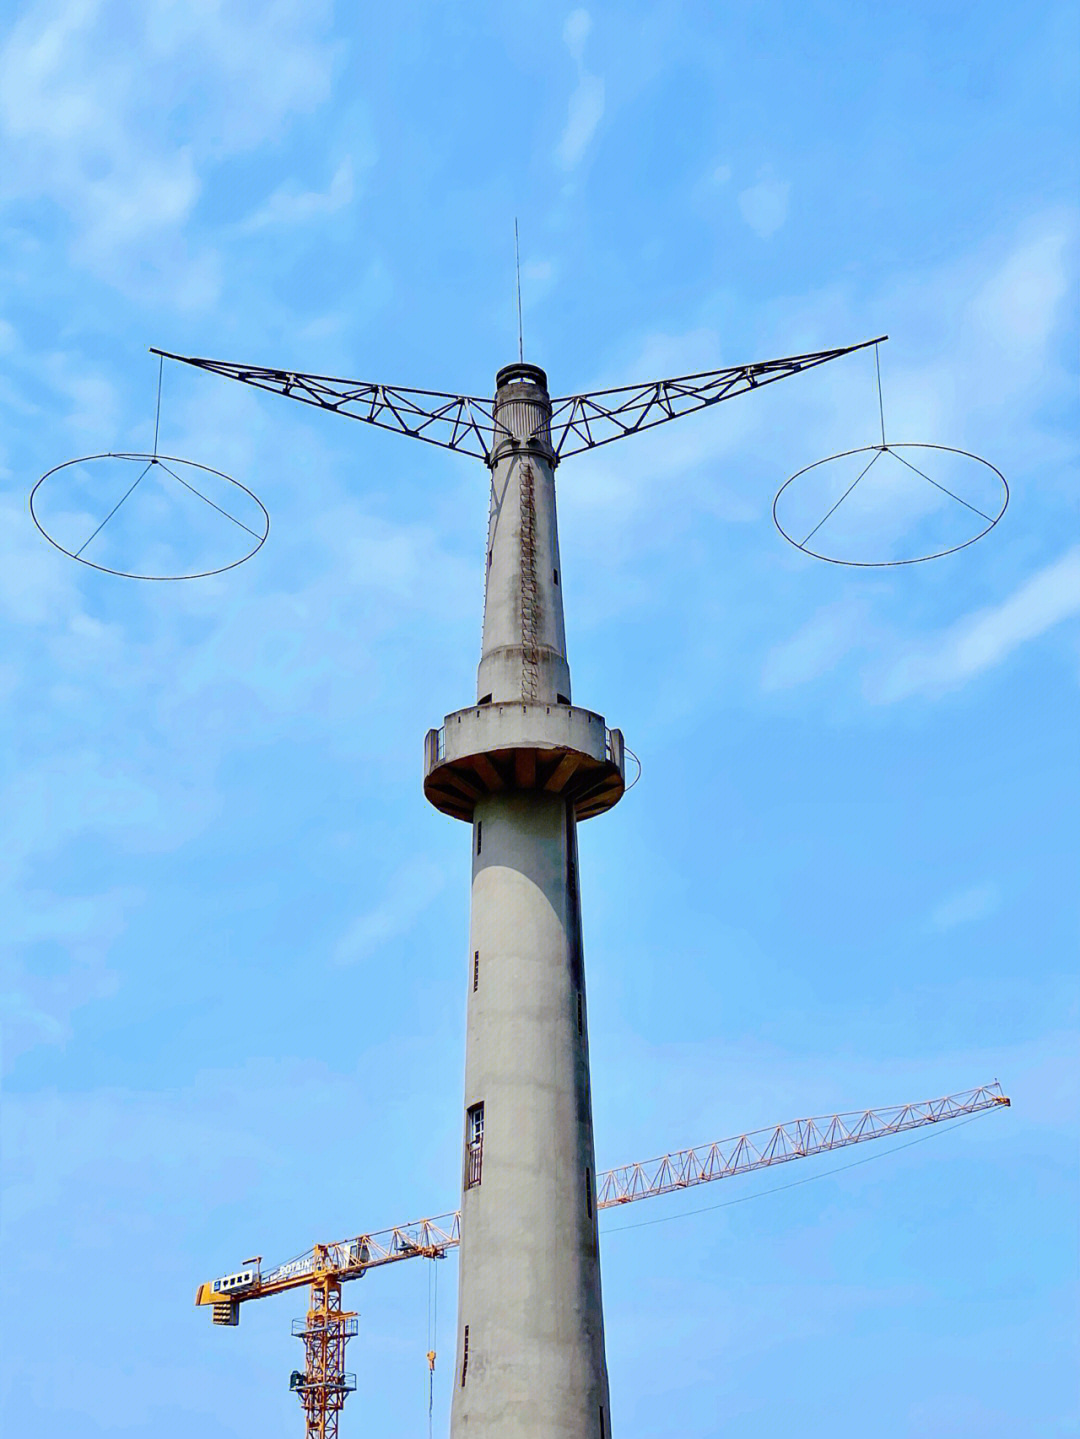 重庆跳伞塔图片